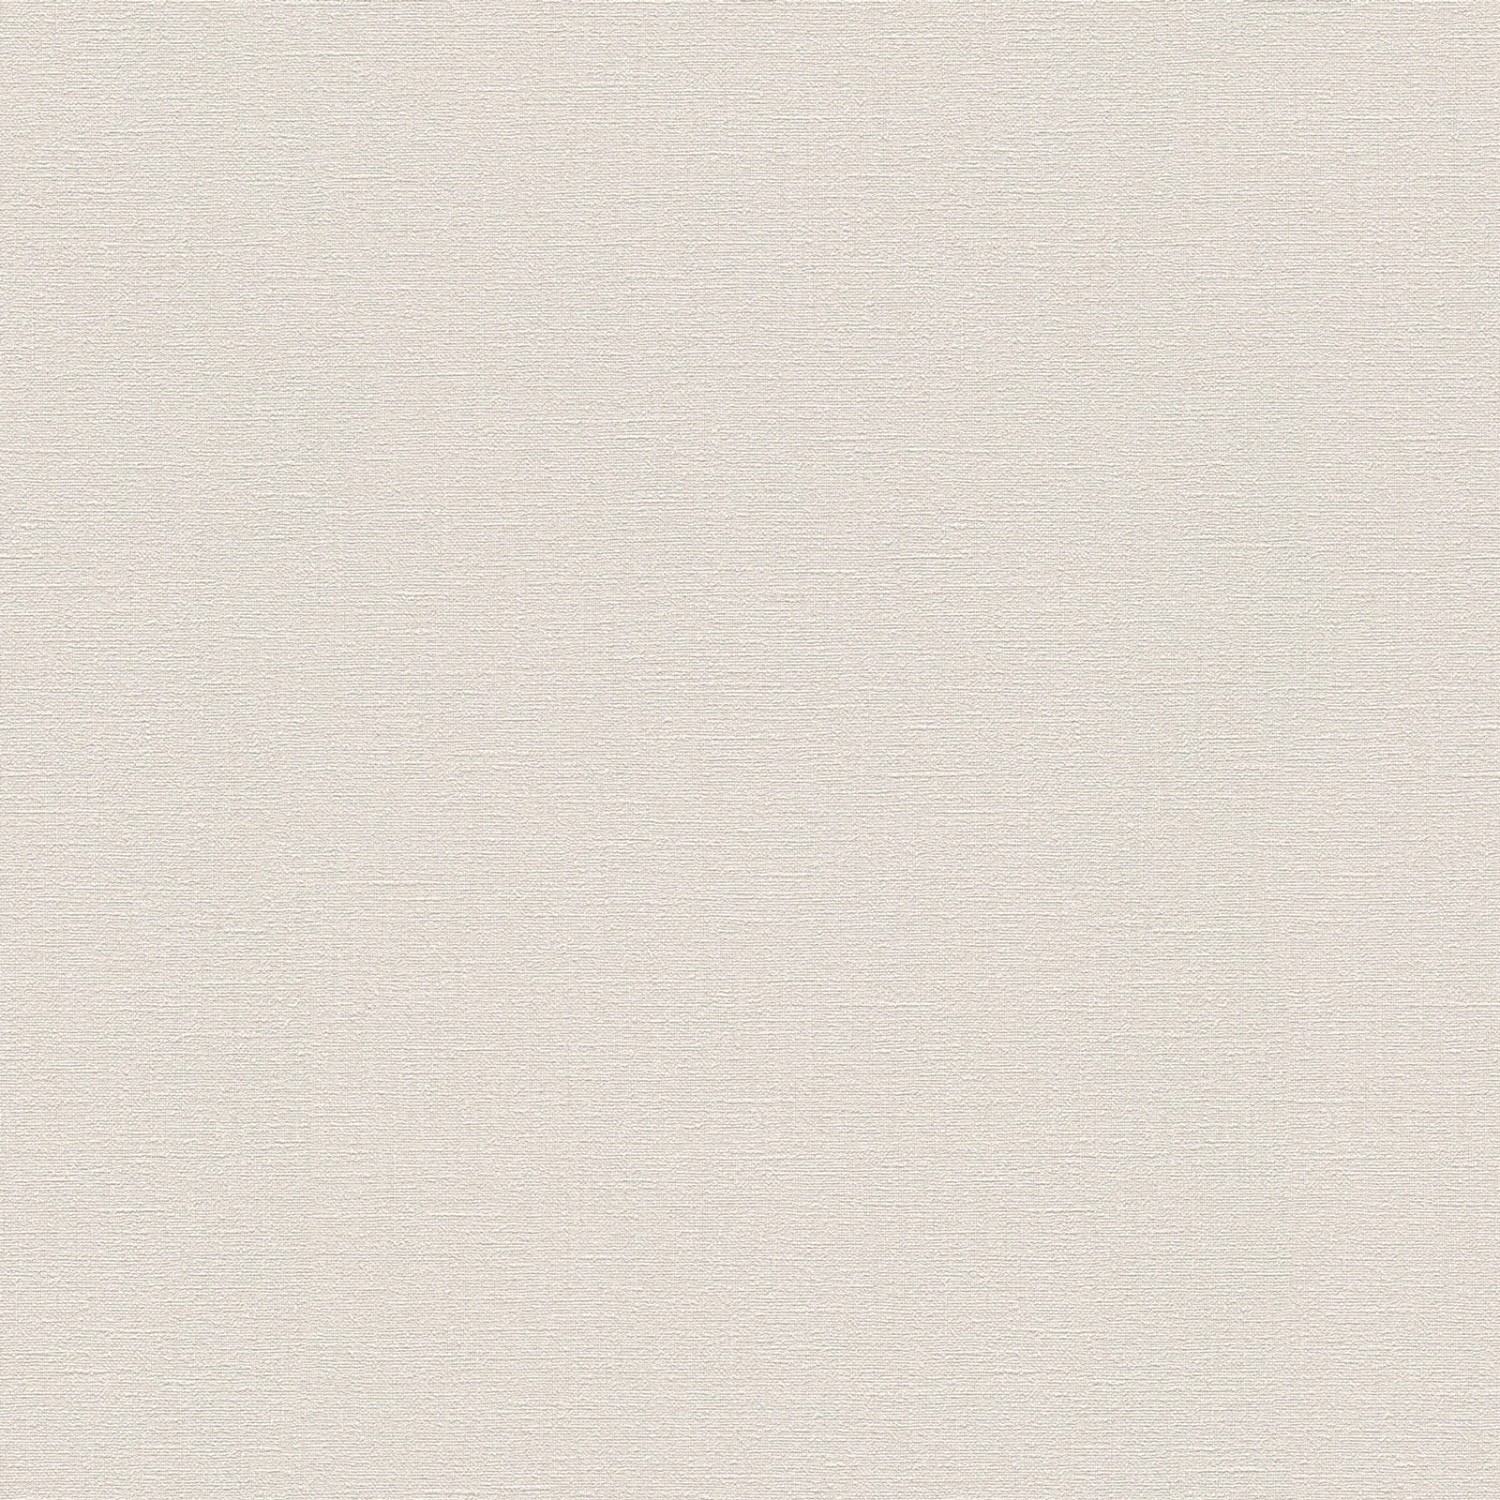 Bricoflor Uni Vliestapete Hell Einfarbige Vlies Wandtapete in Creme Ideal für Badezimmer und Flur Moderne Tapete mit Vin